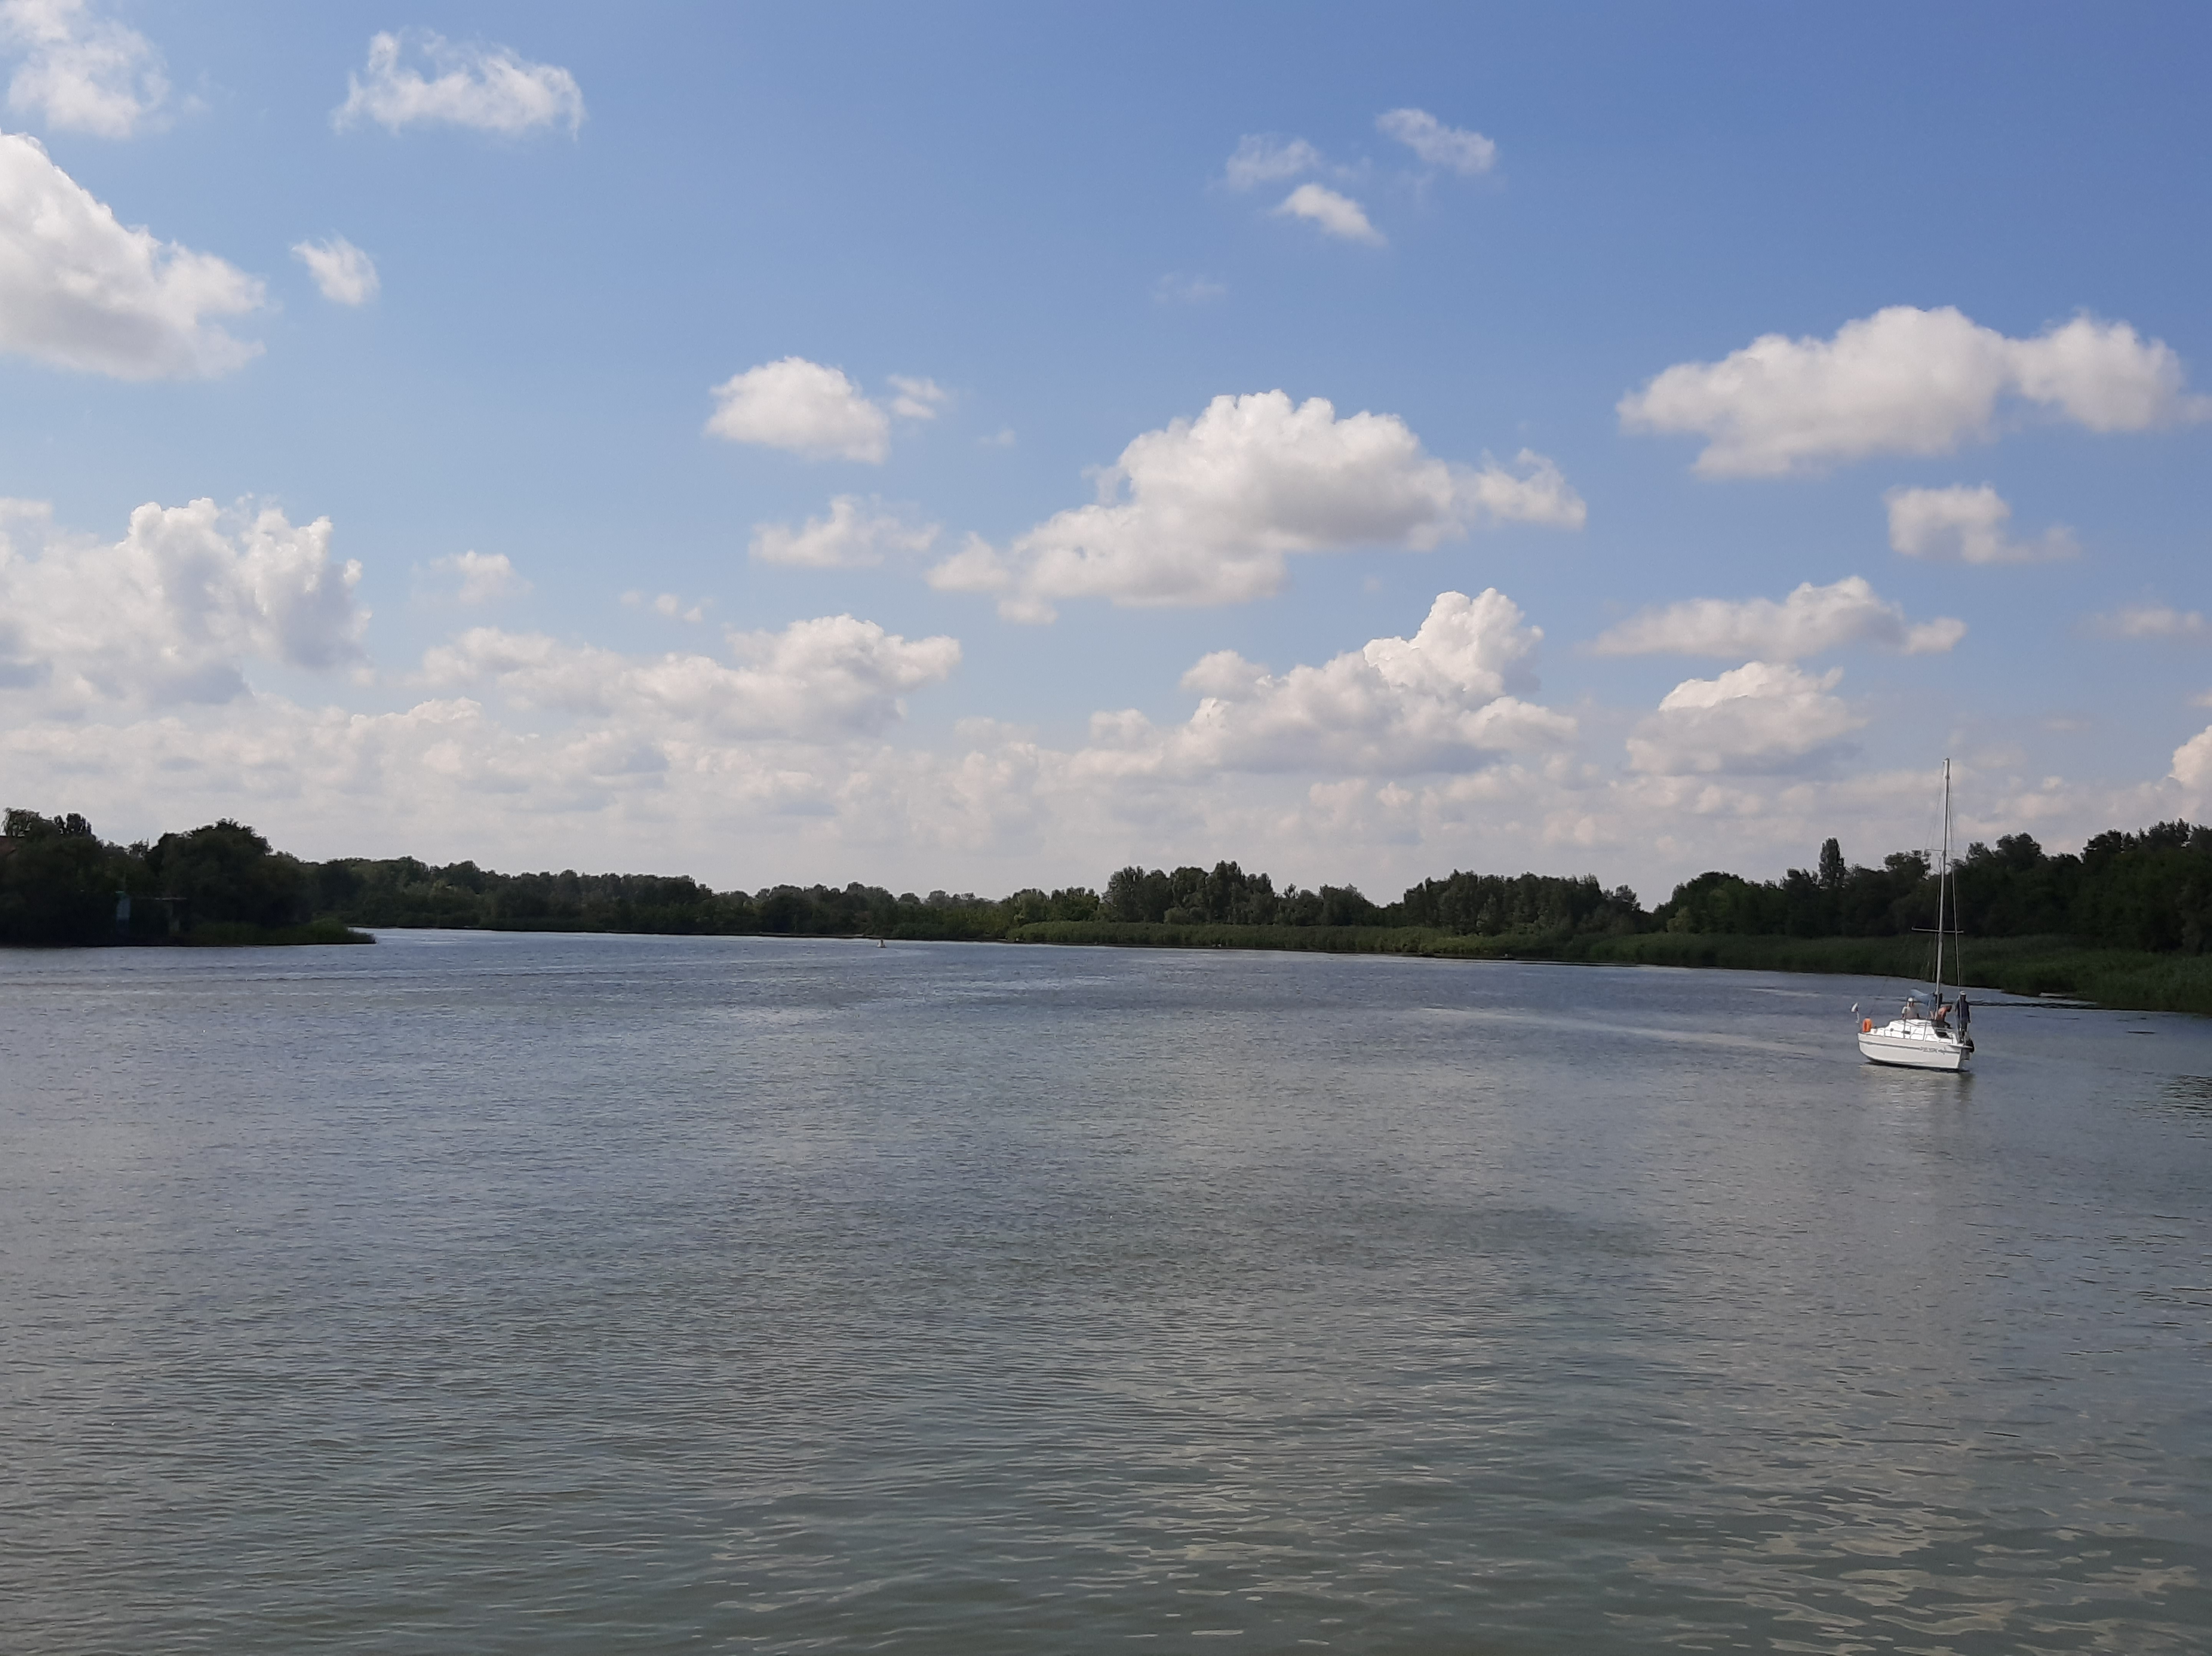 Бесплатное фото Река Дон в ясную и облачную погоду с катерами